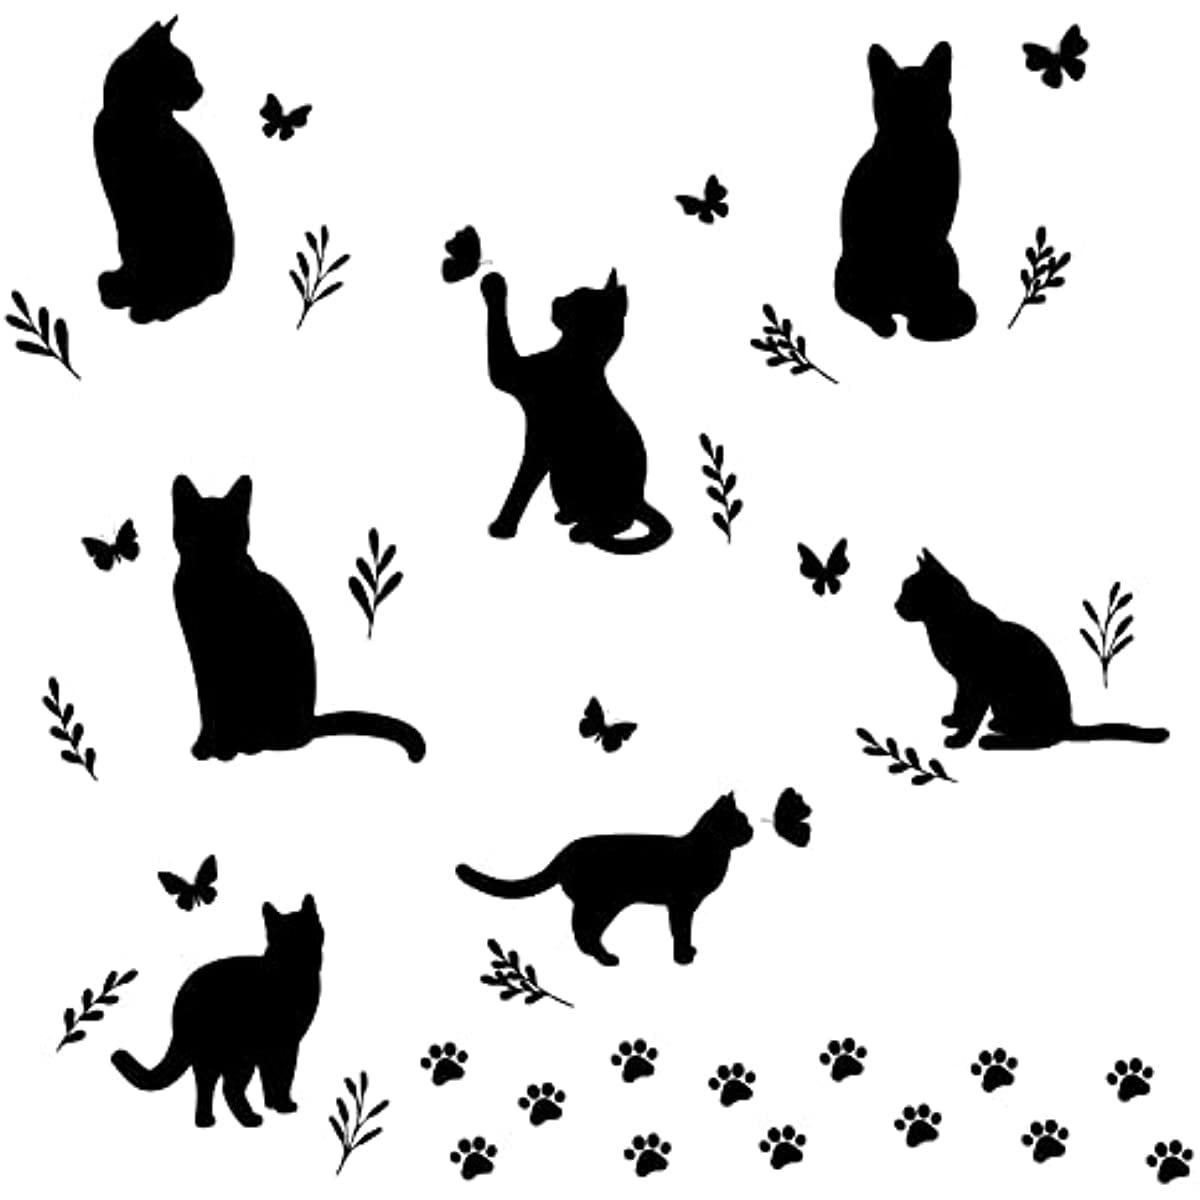 Sticker Black sitting cat. Vector illustration. 